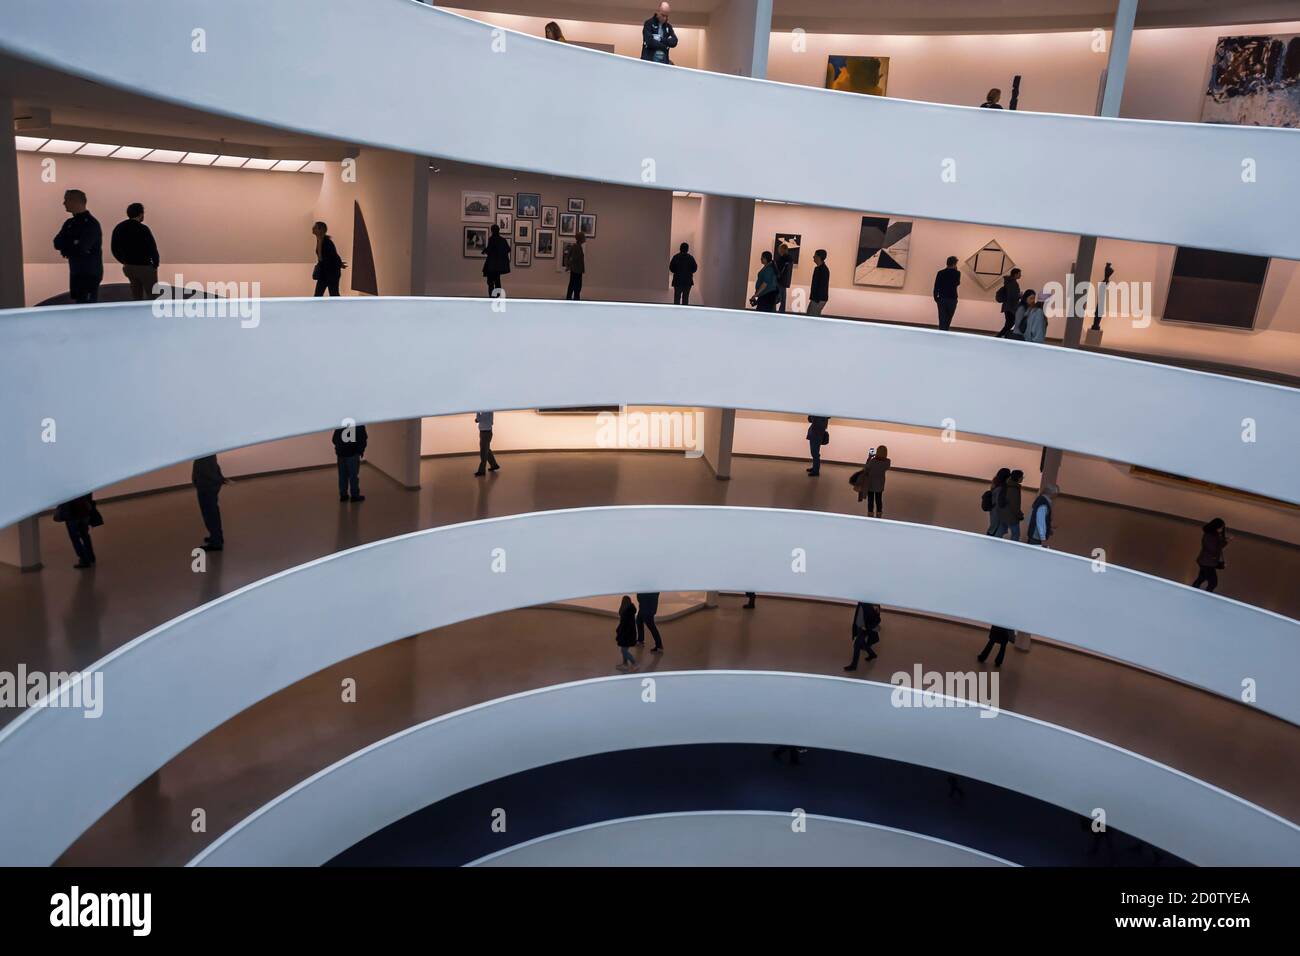 New York, États-Unis d'Amérique - 8 décembre 2019. Intérieur du célèbre musée Guggenheim dans la 5ème Avenue à New York. Banque D'Images